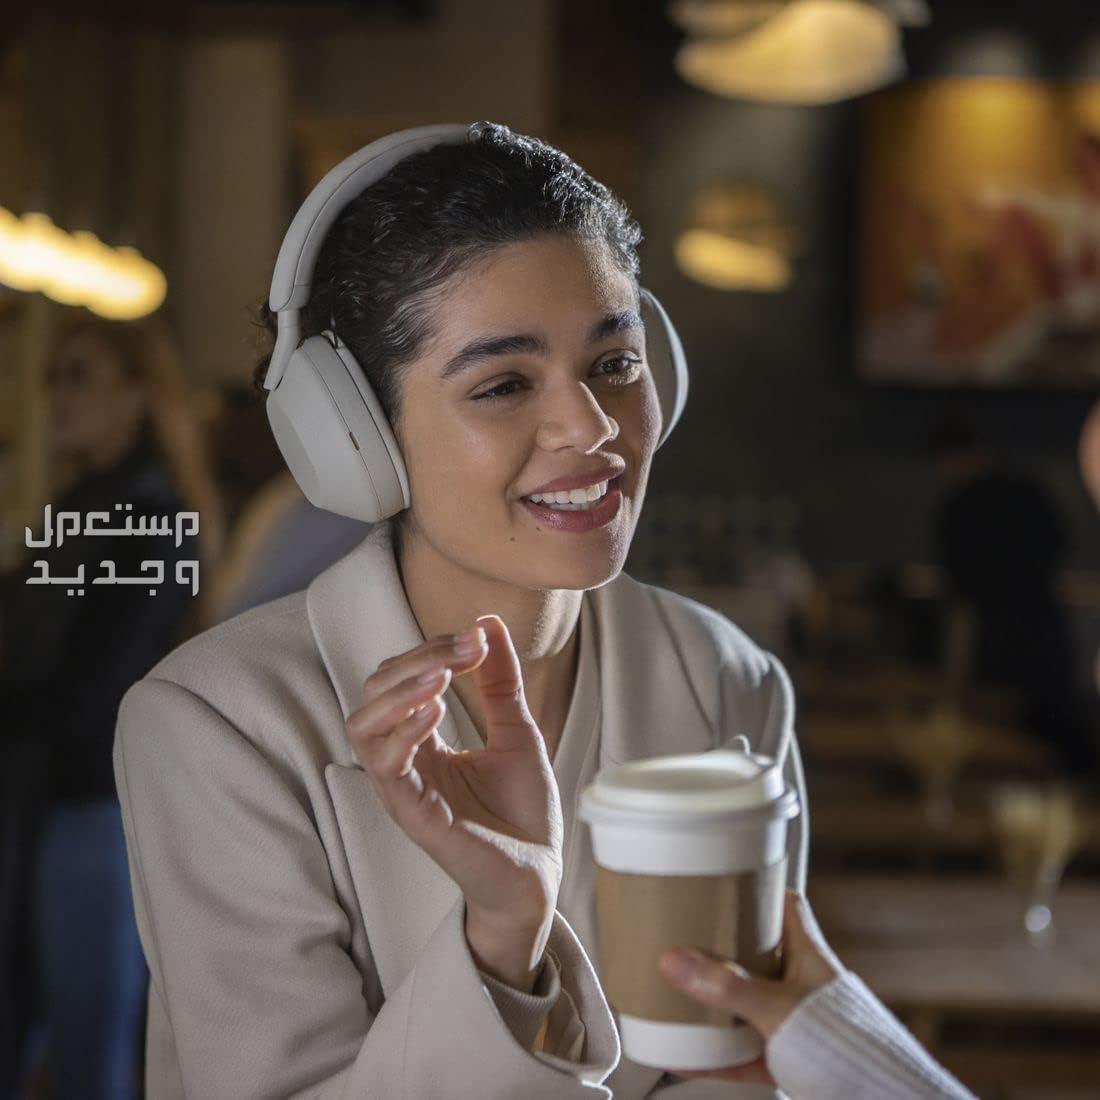 سماعة سوني 5 بتقنية إلغاء الضوضاء المطوّرة  السعر والمميزات الفائقة في قطر سماعة سوني 5 جودة مكالمات رائدة